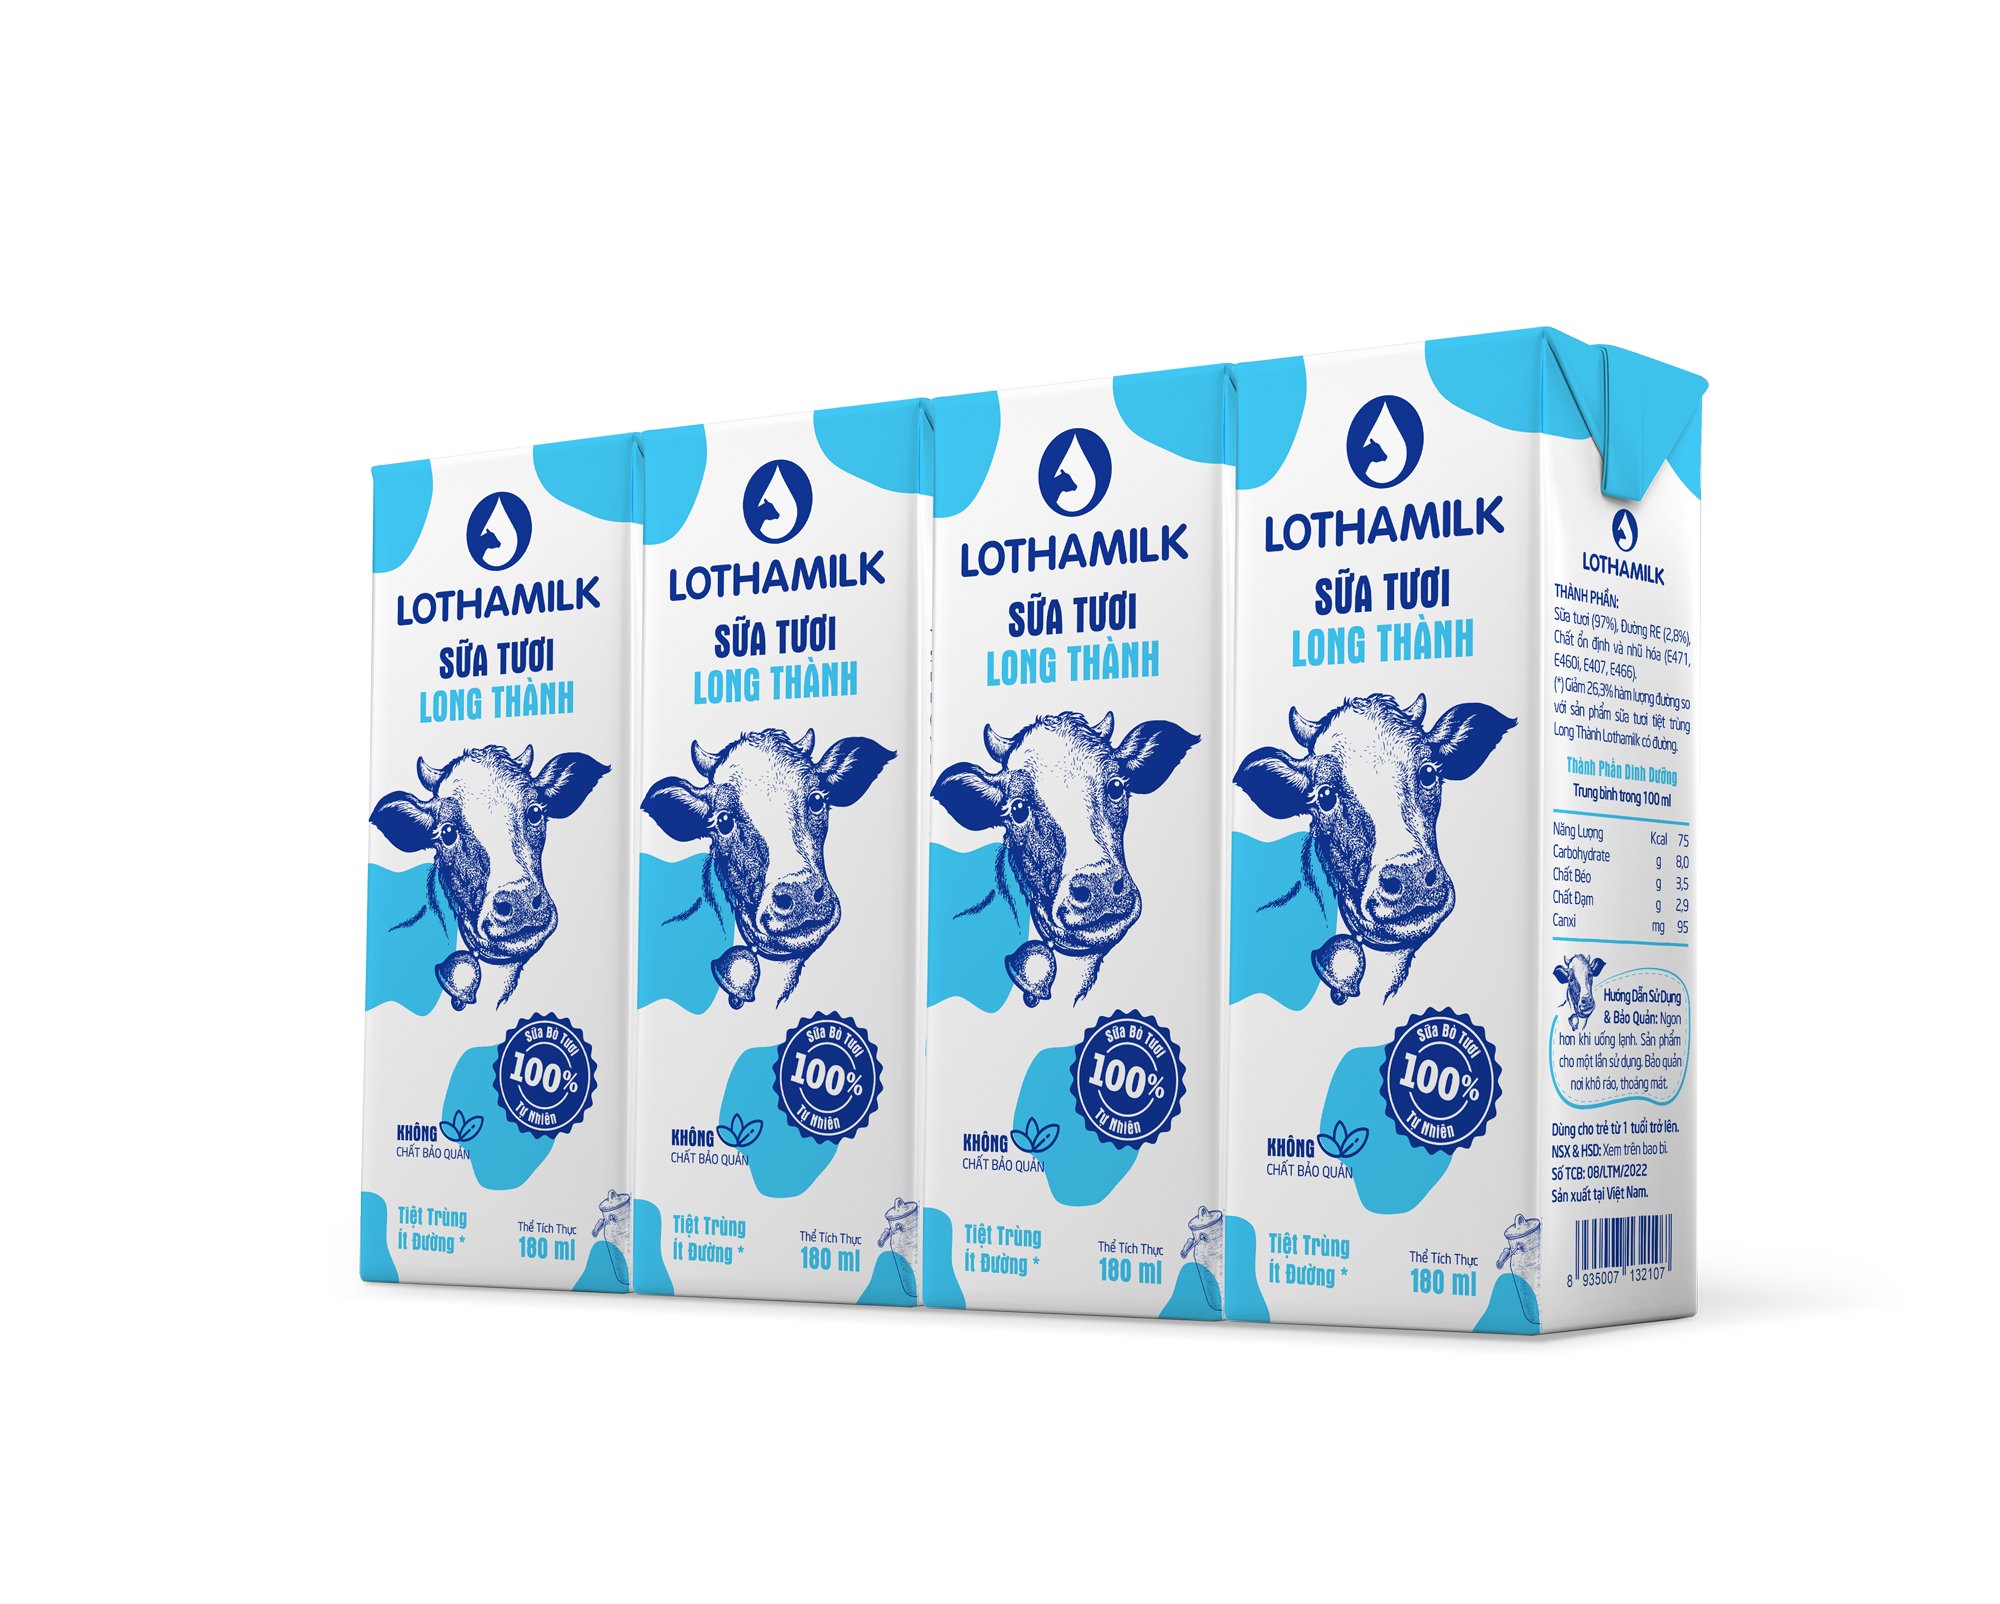 Thùng 48 Hộp Sữa Tươi Tiệt Trùng Lothamilk Ít Đường 180ml